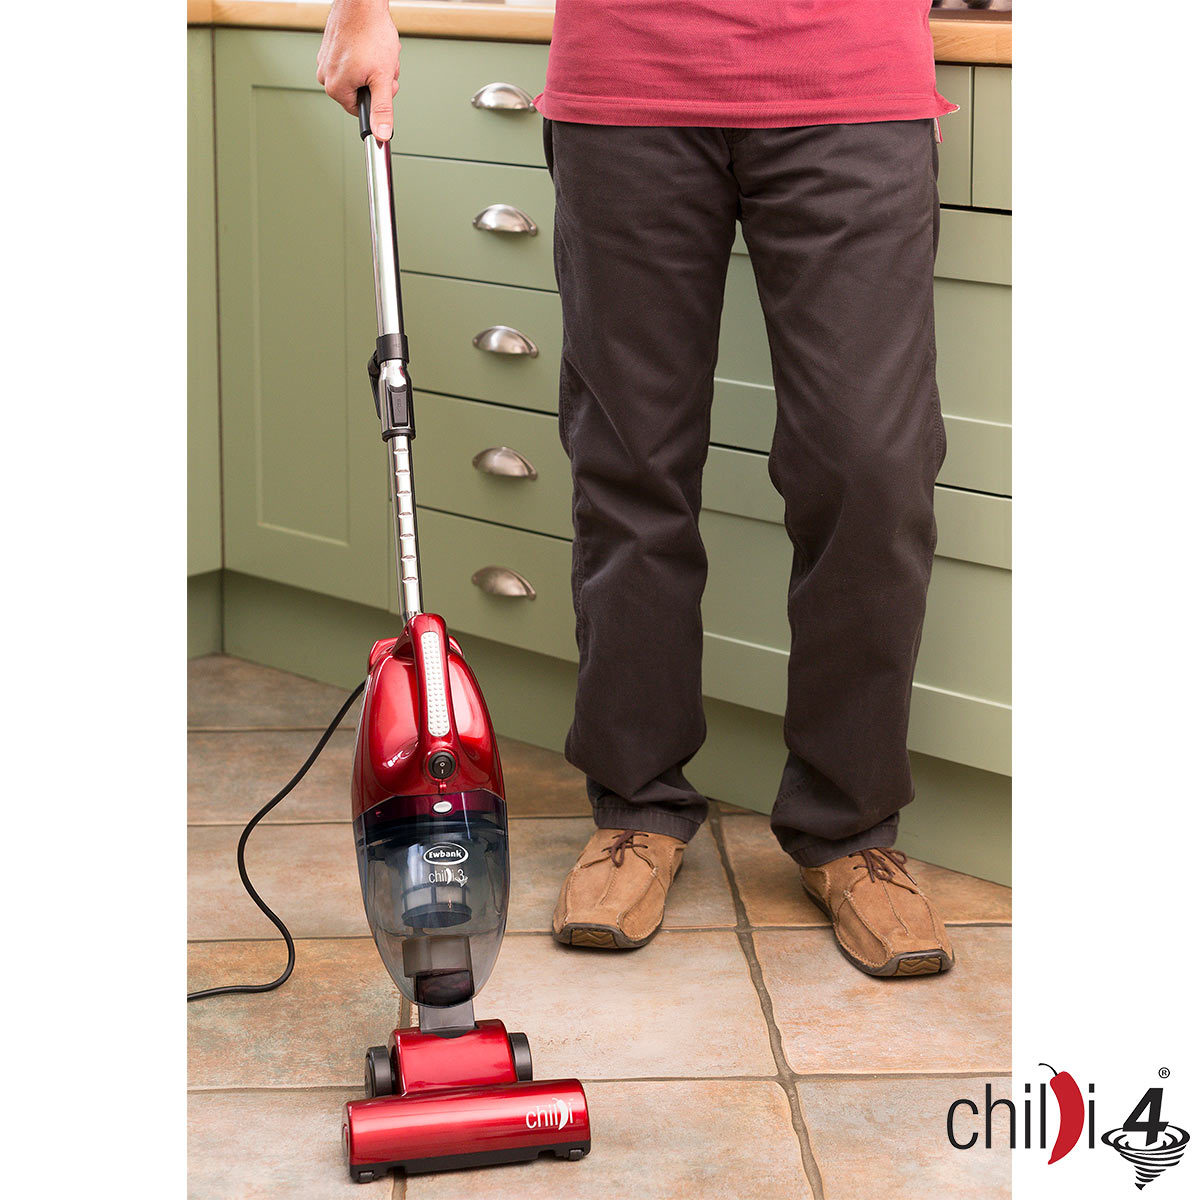 Ewbank Chilli 4 Upright & Handheld Vacuum